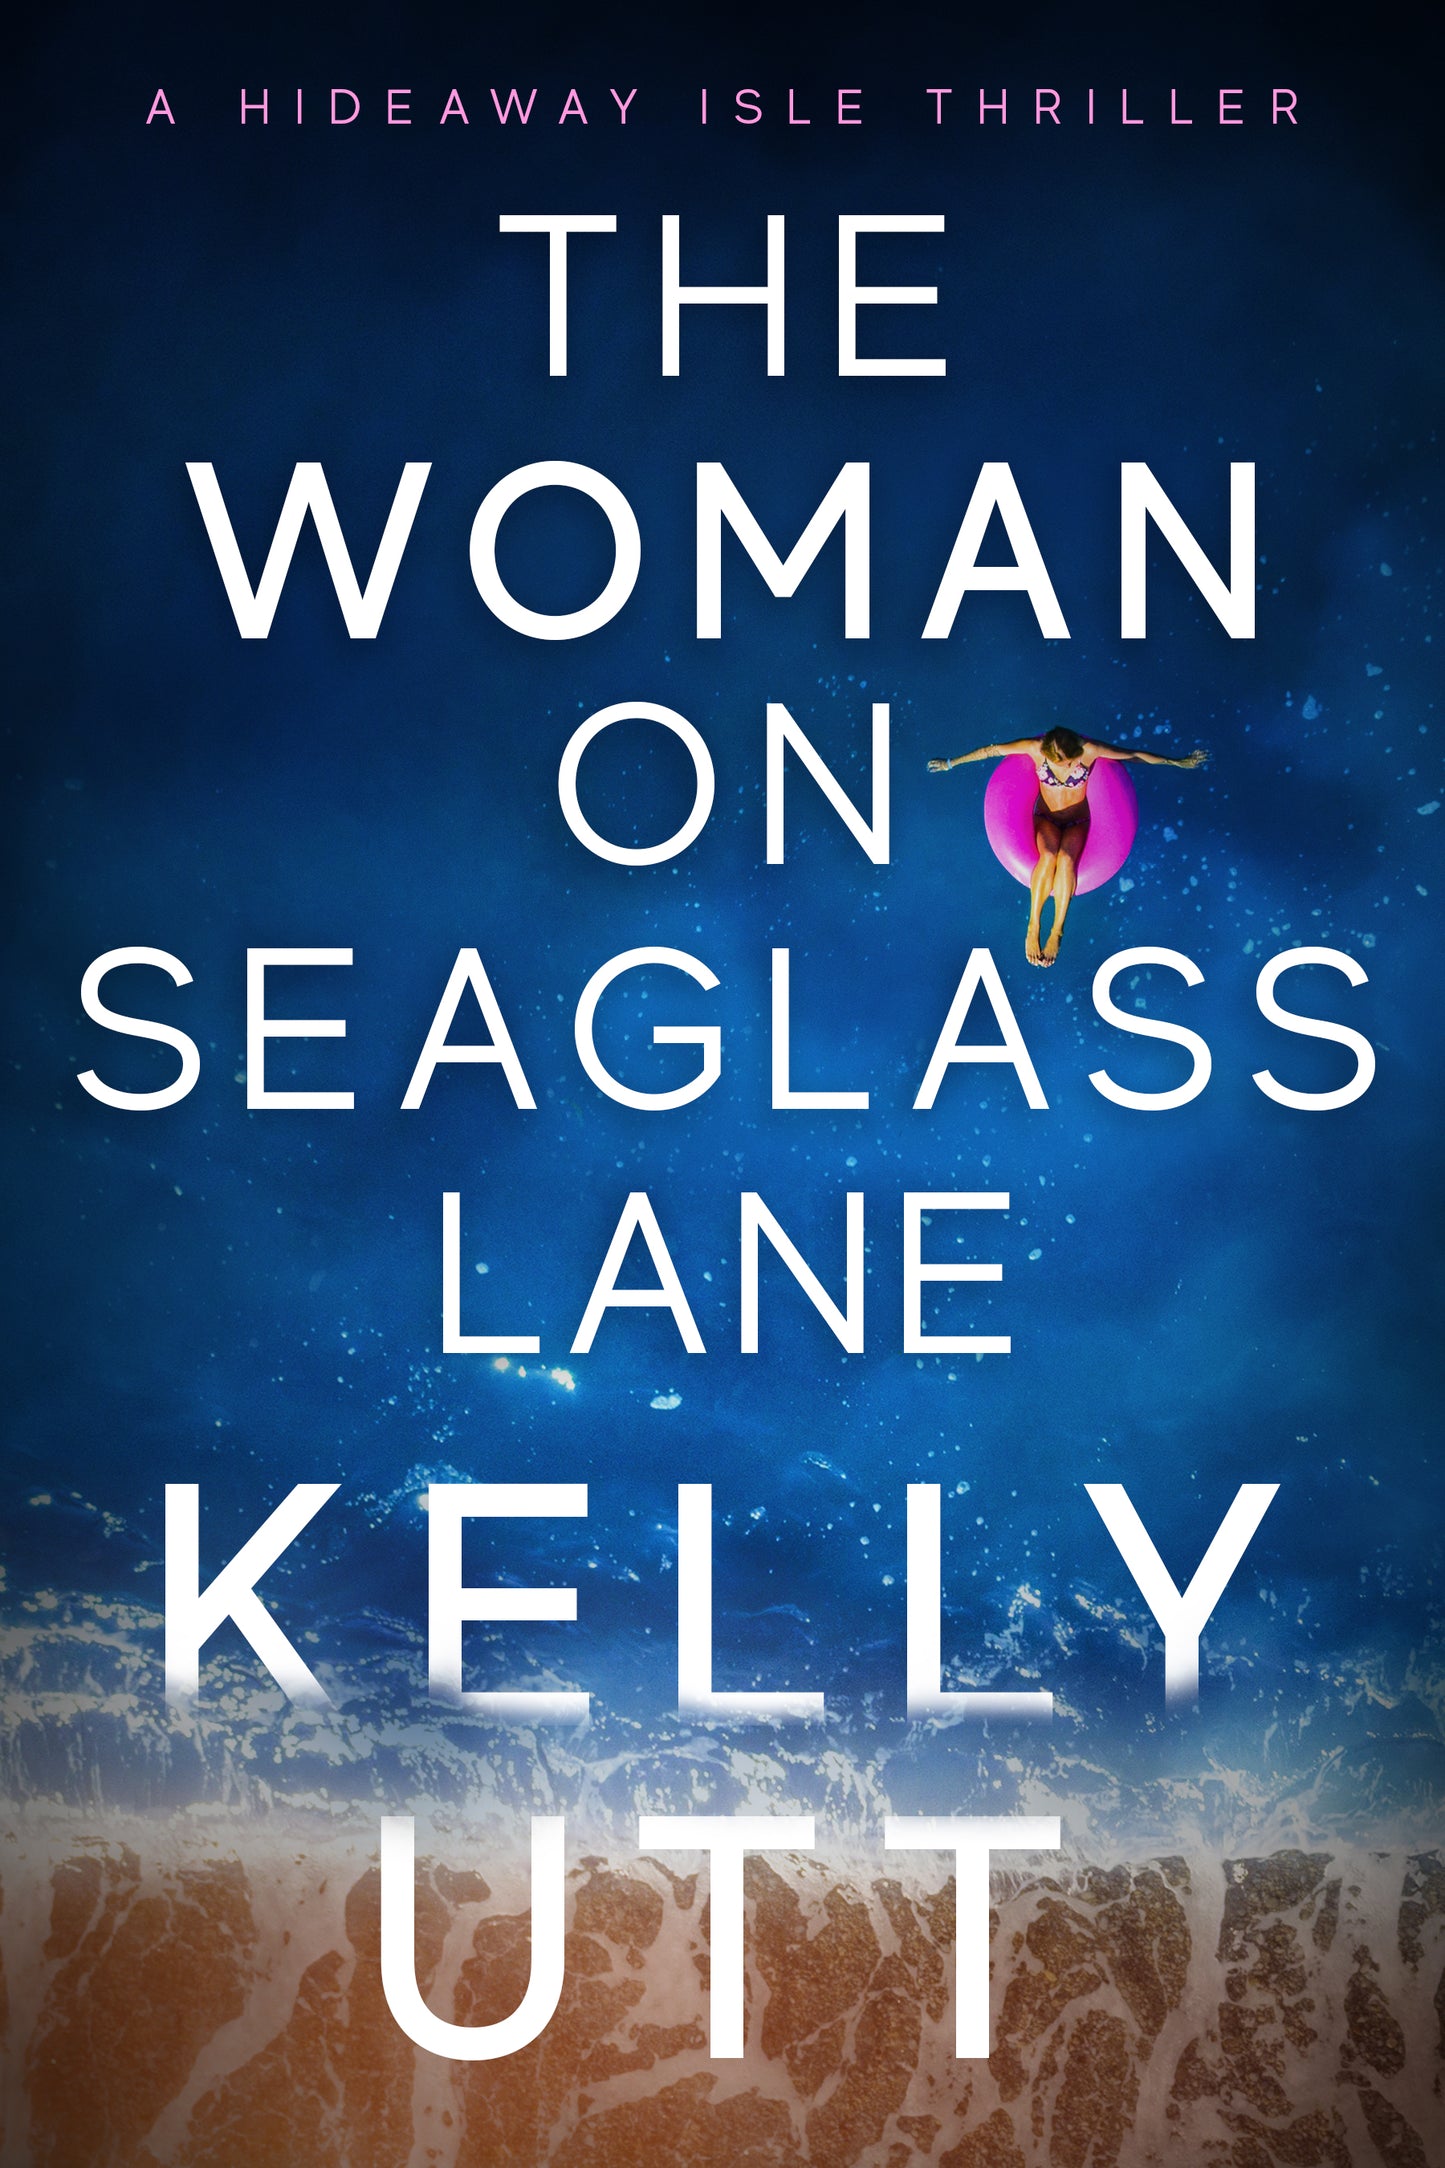 The Woman on Seaglass Lane